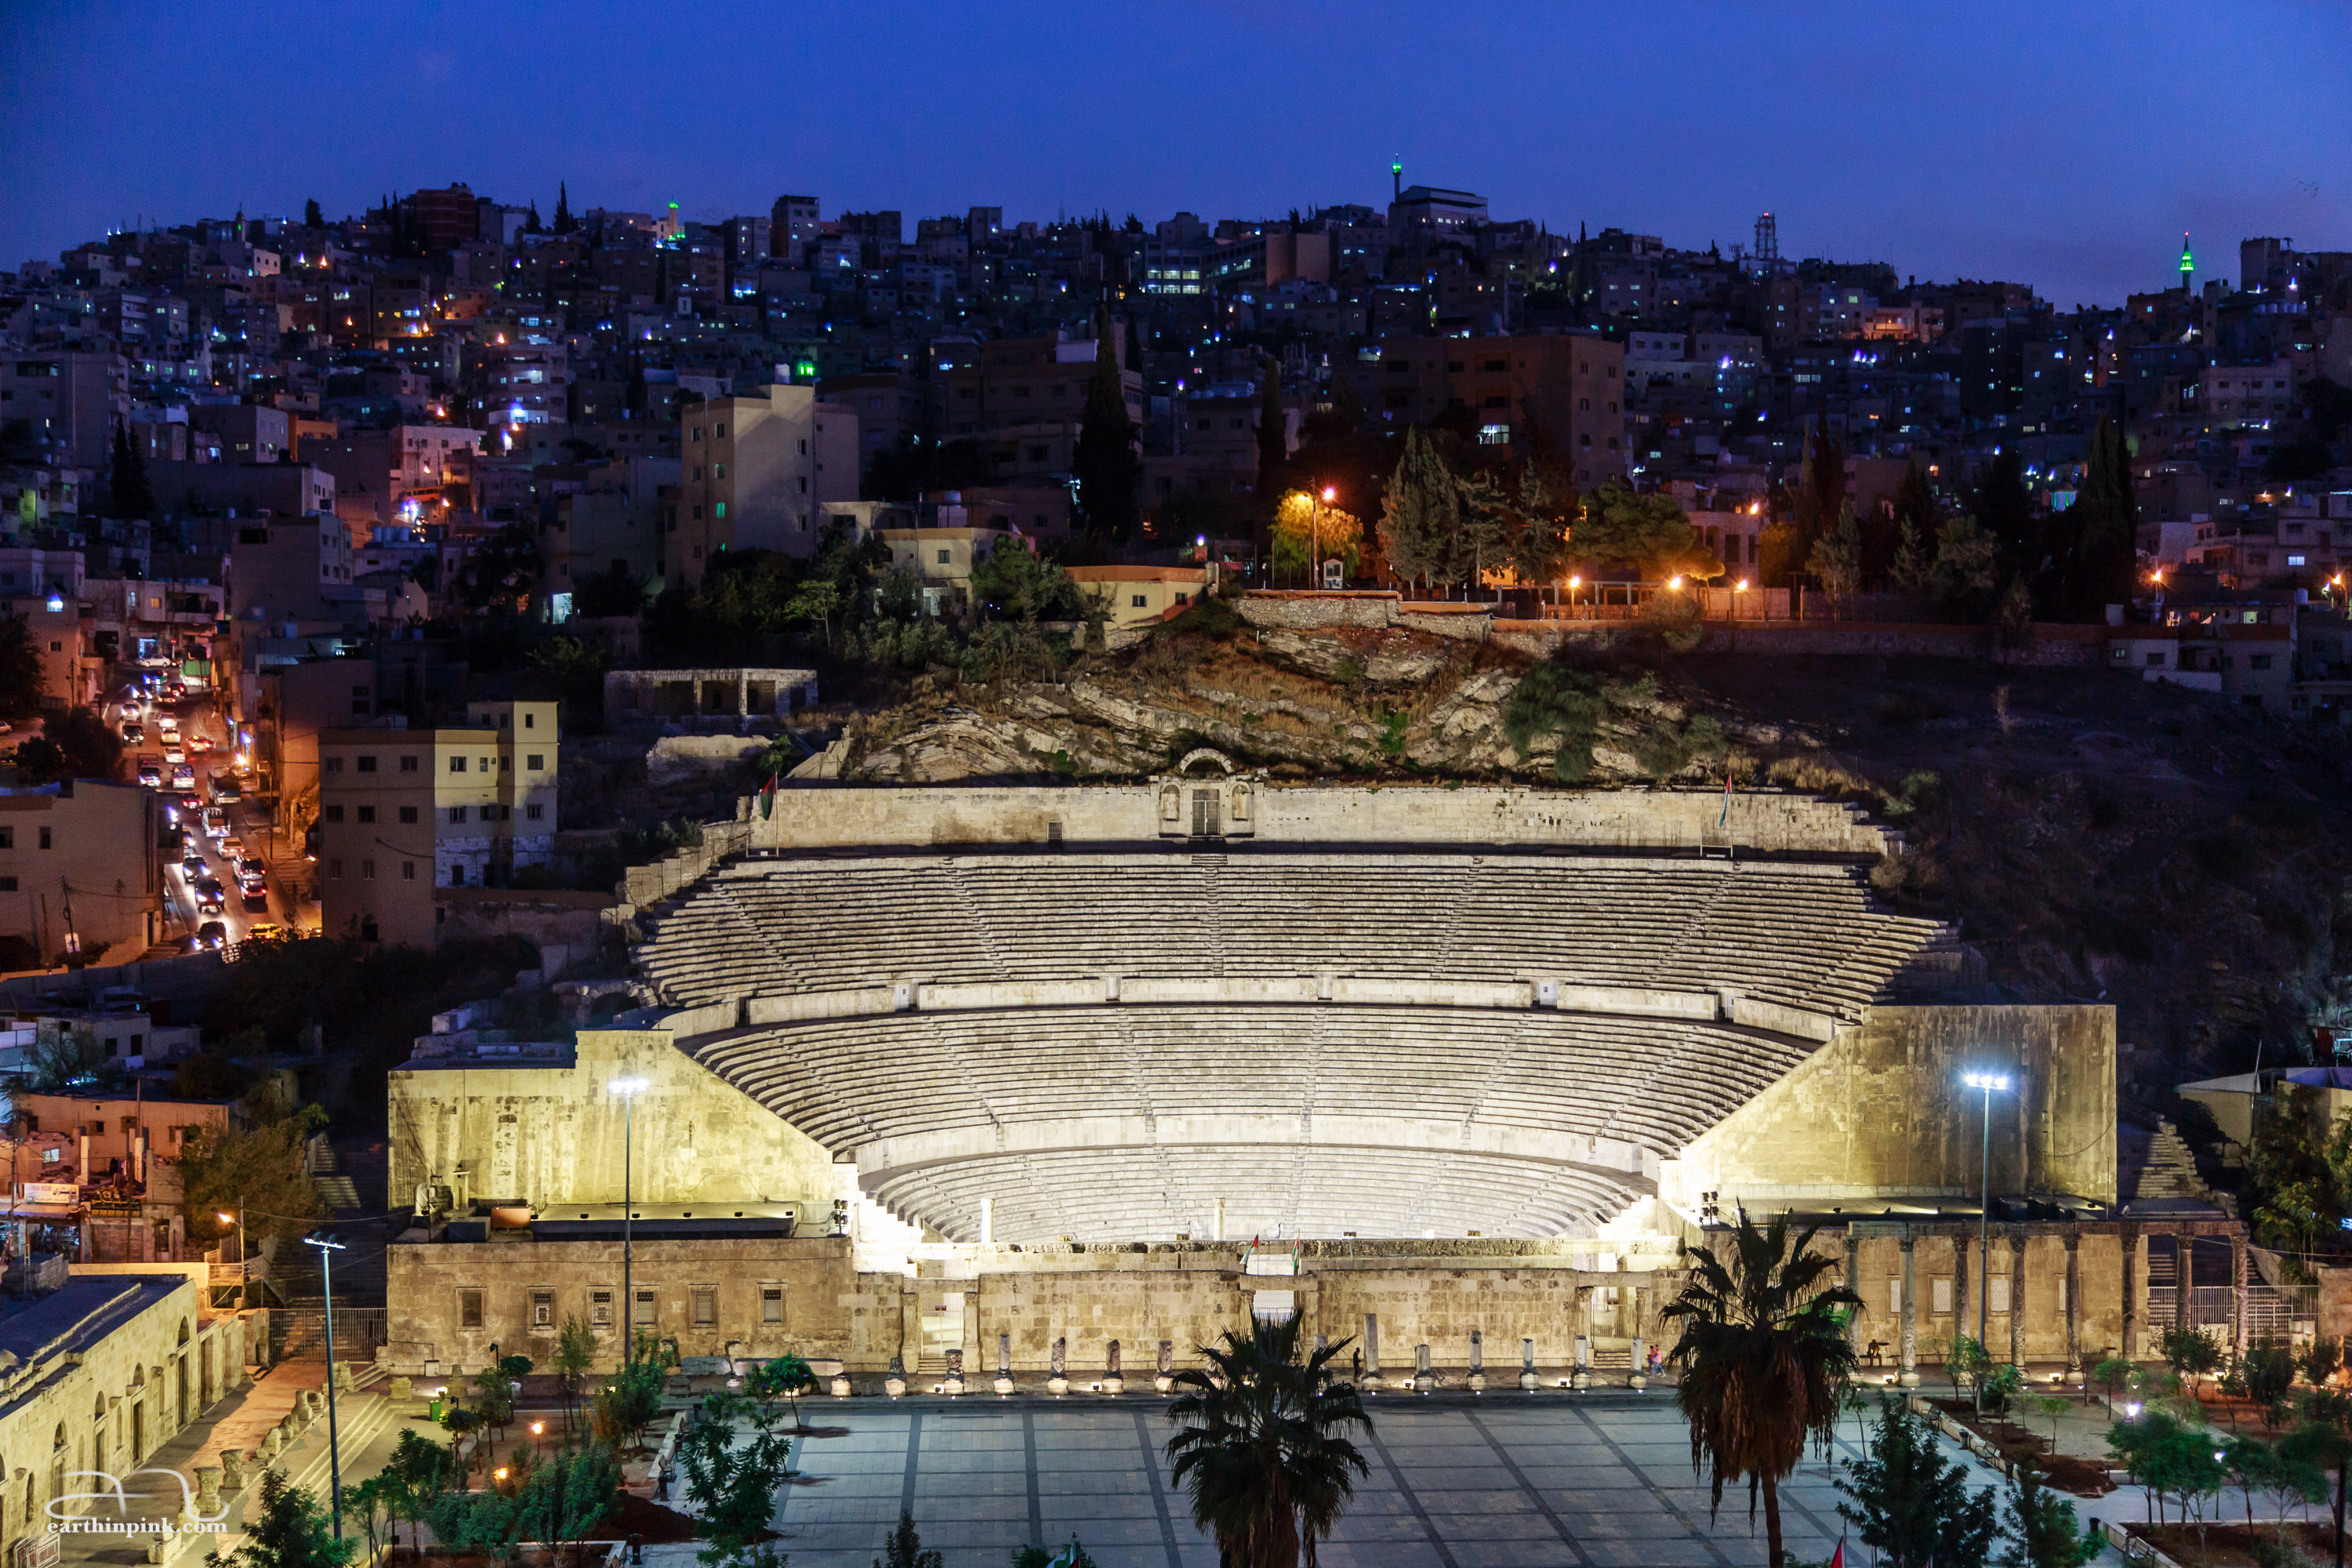 Roman theater, Amman